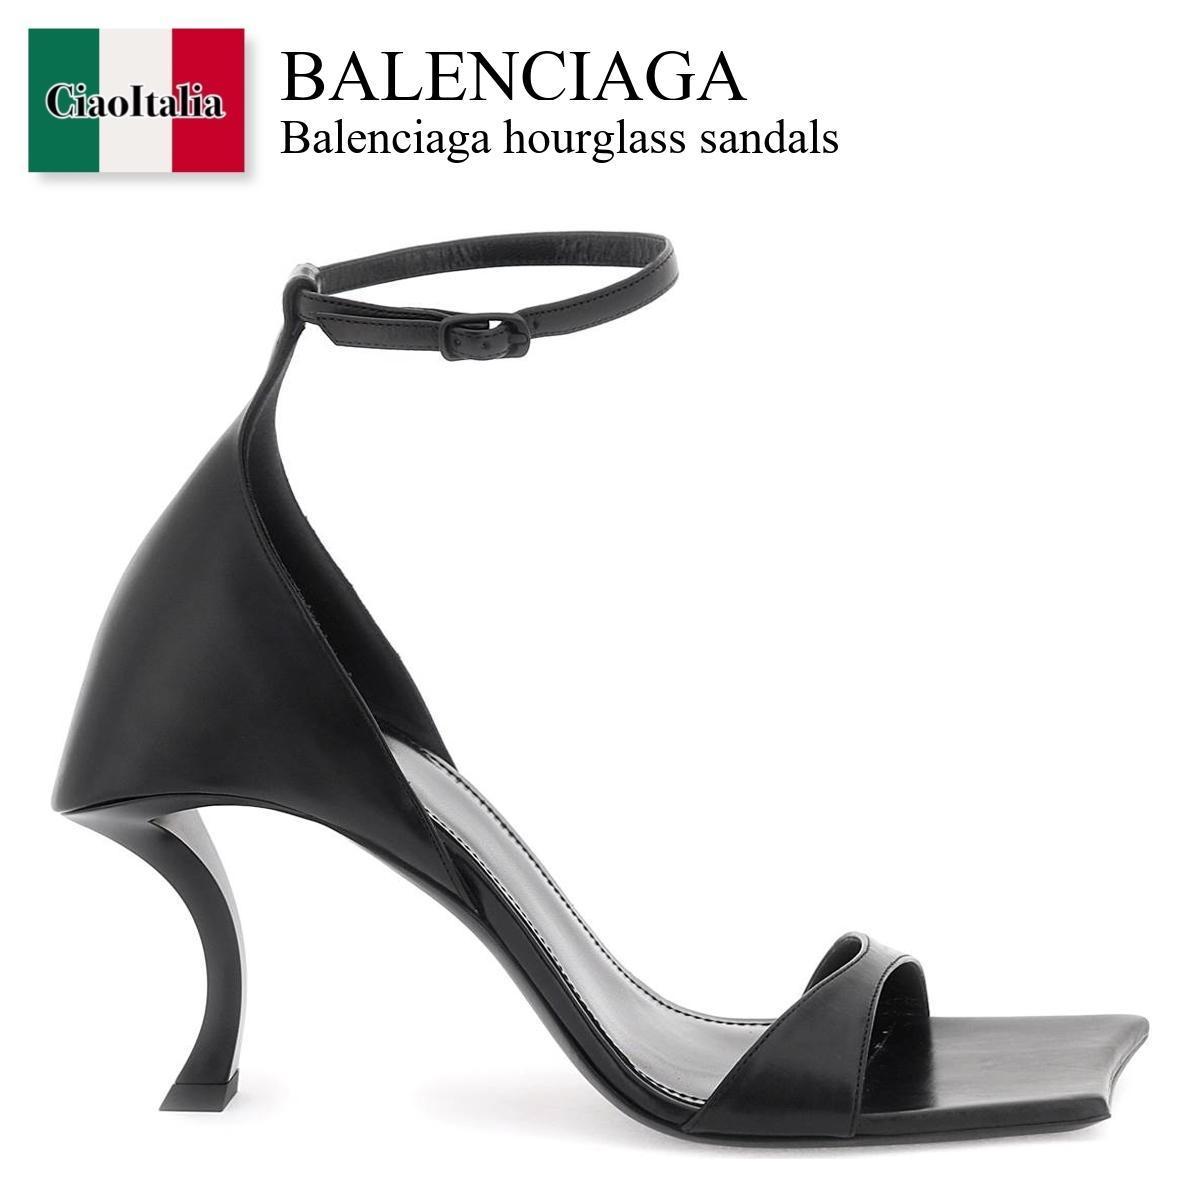 バレンシアガ / Balenciaga Hourglass Sandals / 742401 WBET1 / 742401 WBET1 1000 / 742401WBET11000 / 742401WBET1 / サンダル・ミュール / 「正規品補償」「VIP価格販売」「お買い物サポート」